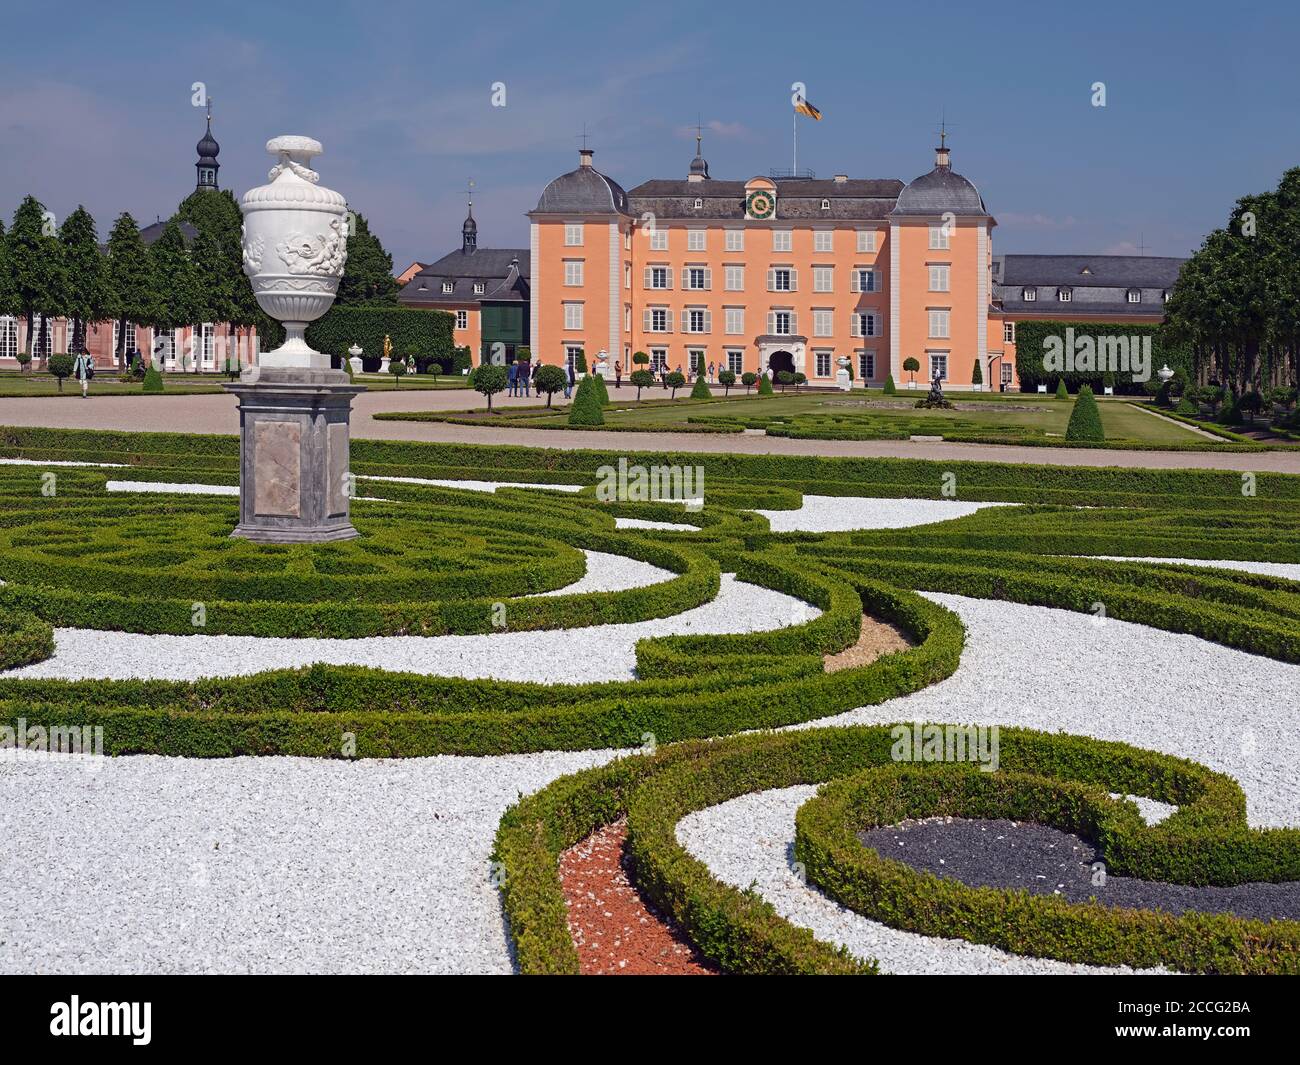 Palace garden, palace park, castle, Schwetzingen, Baden-Württemberg, Germany Stock Photo